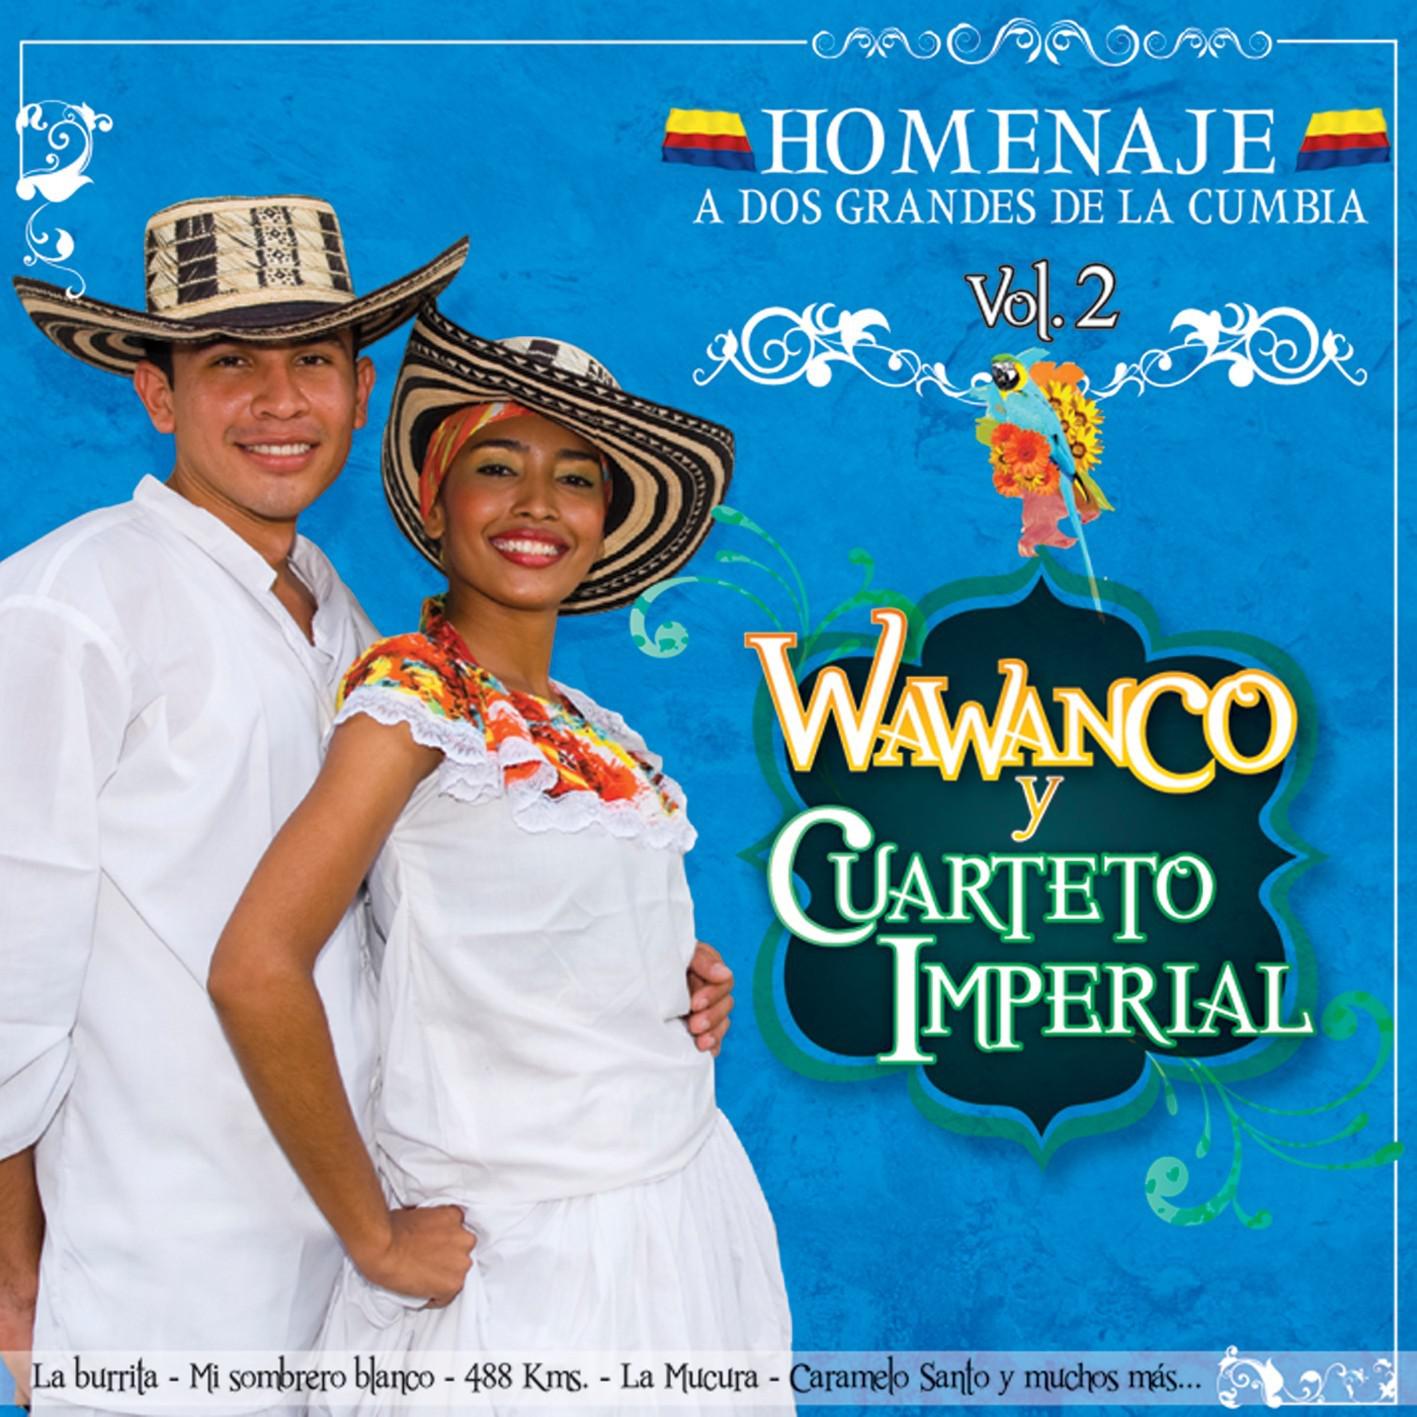 Homenaje a Dos Grandes de la Cumbia: Wawanco y Cuarteto Imperial, Vol. 2